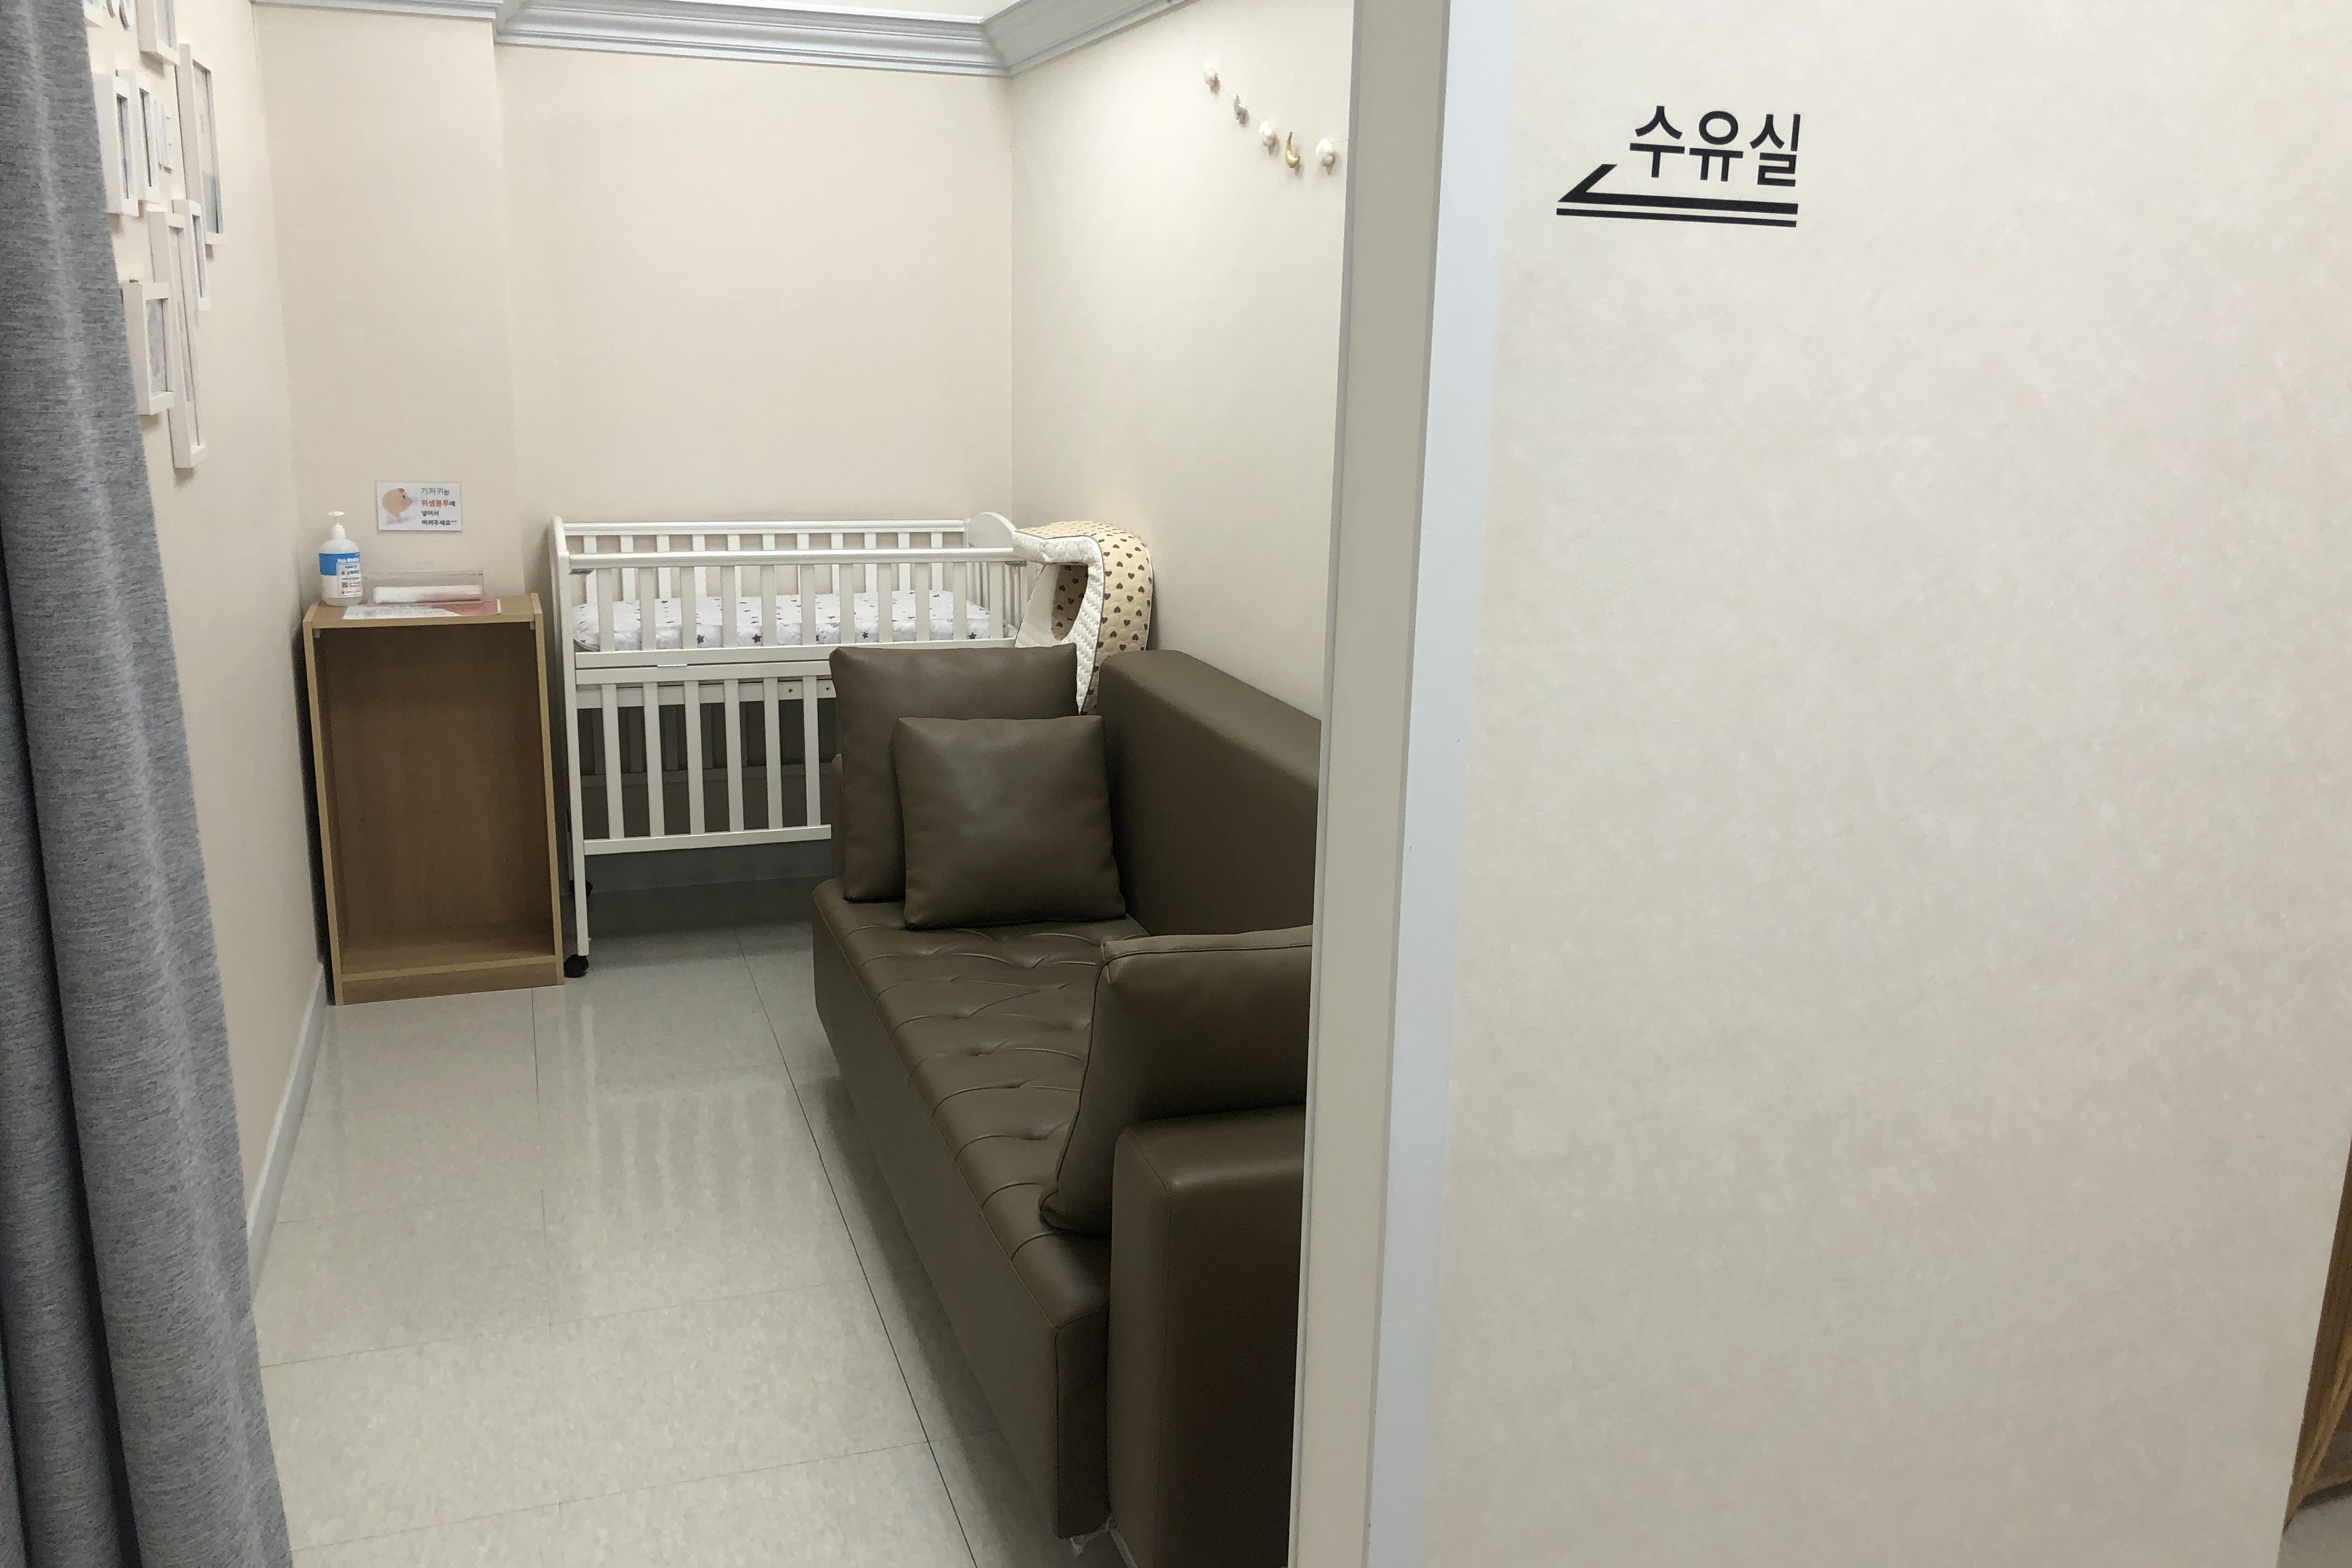 임산부 및 유아휴게공간0 : 가림막과 유아침대가 설치되어있는 국립현대미술관서울관 수유실 내부 전경